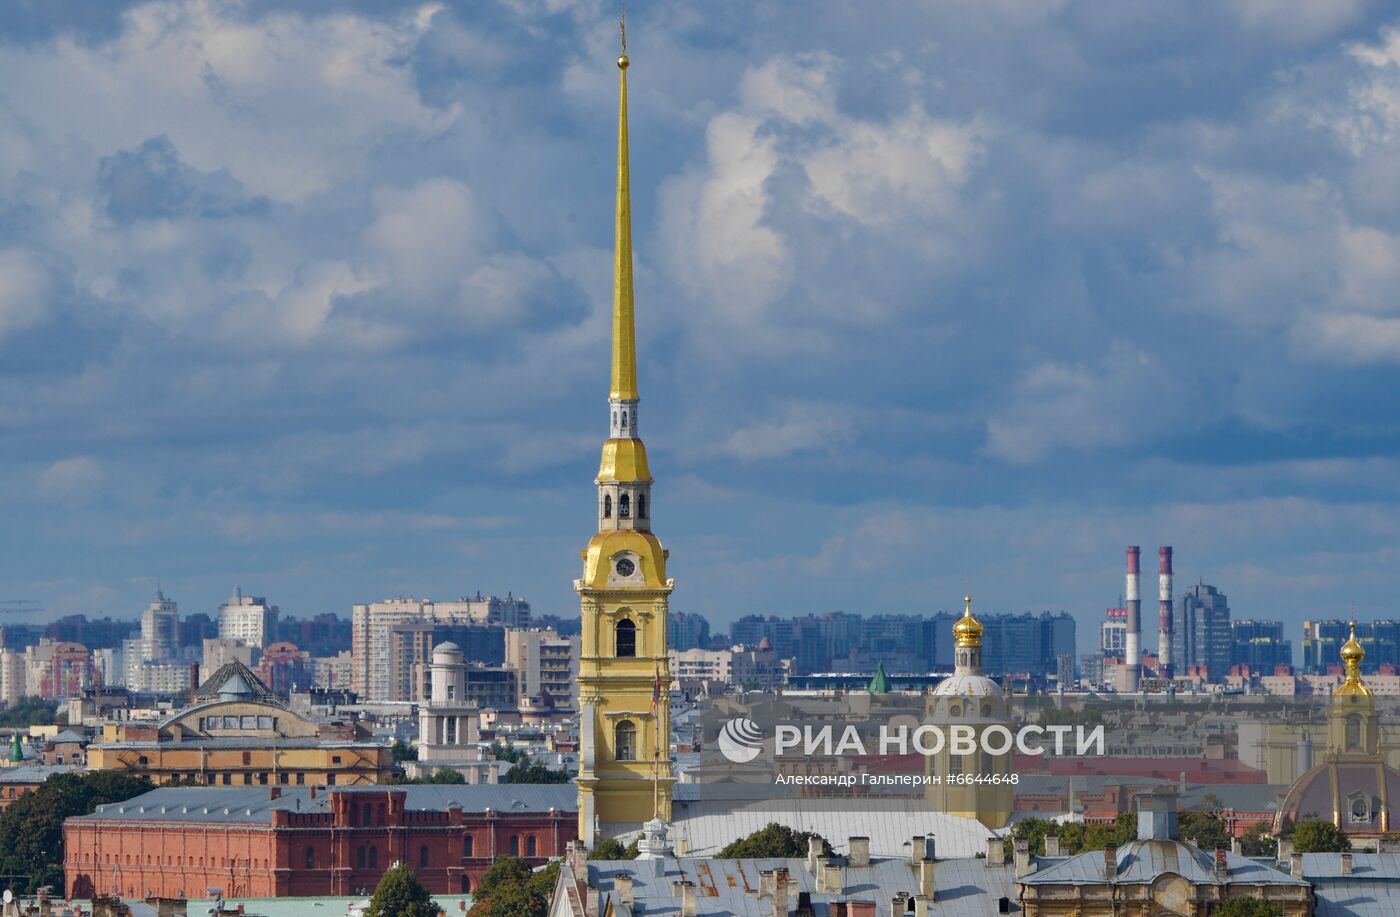 Смотровая площадка Думской башни открылась в Санкт-Петербурге